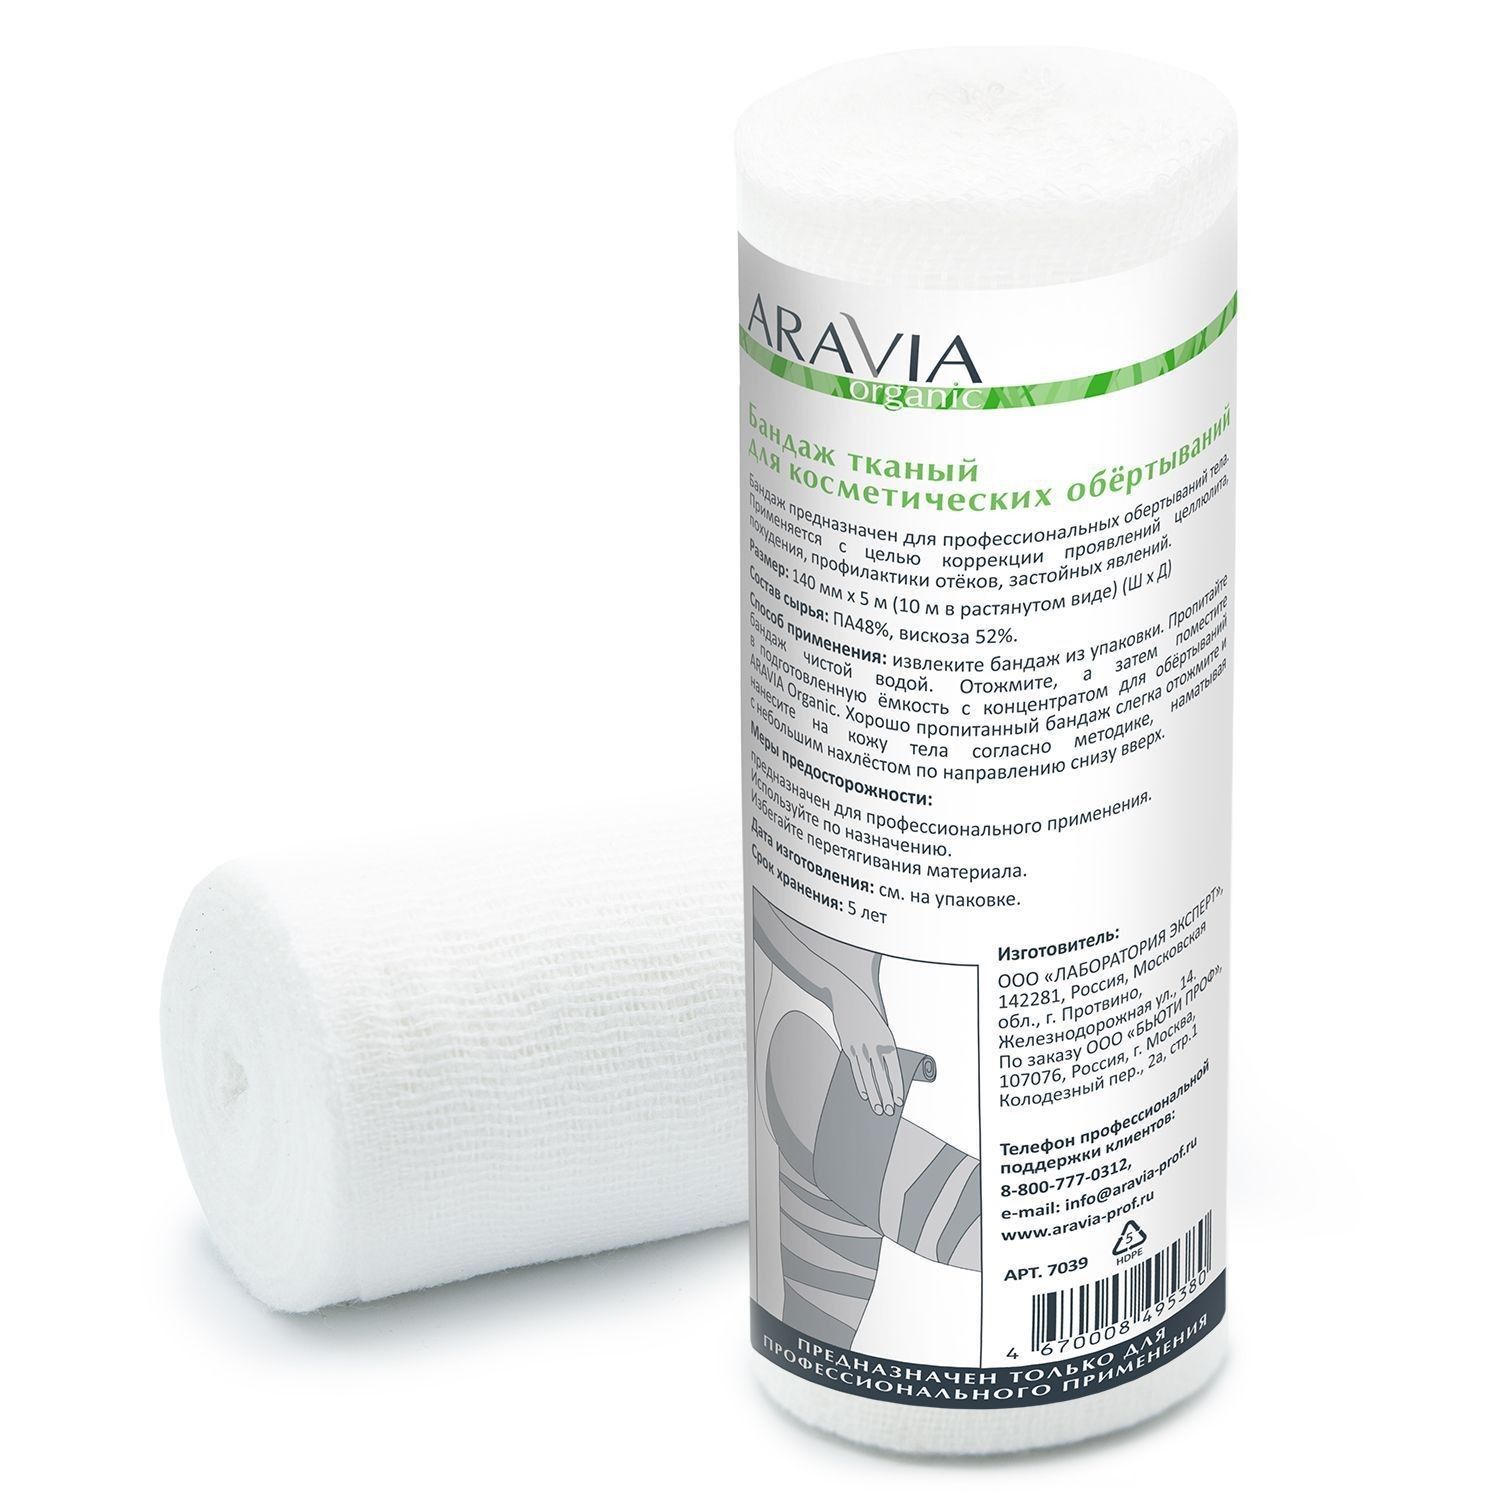 Бандаж для косметических обертываний Aravia Professional тканный 14 см x 10 м бандаж ecoten на плечевой сустав повязка дезо фпс 01с m